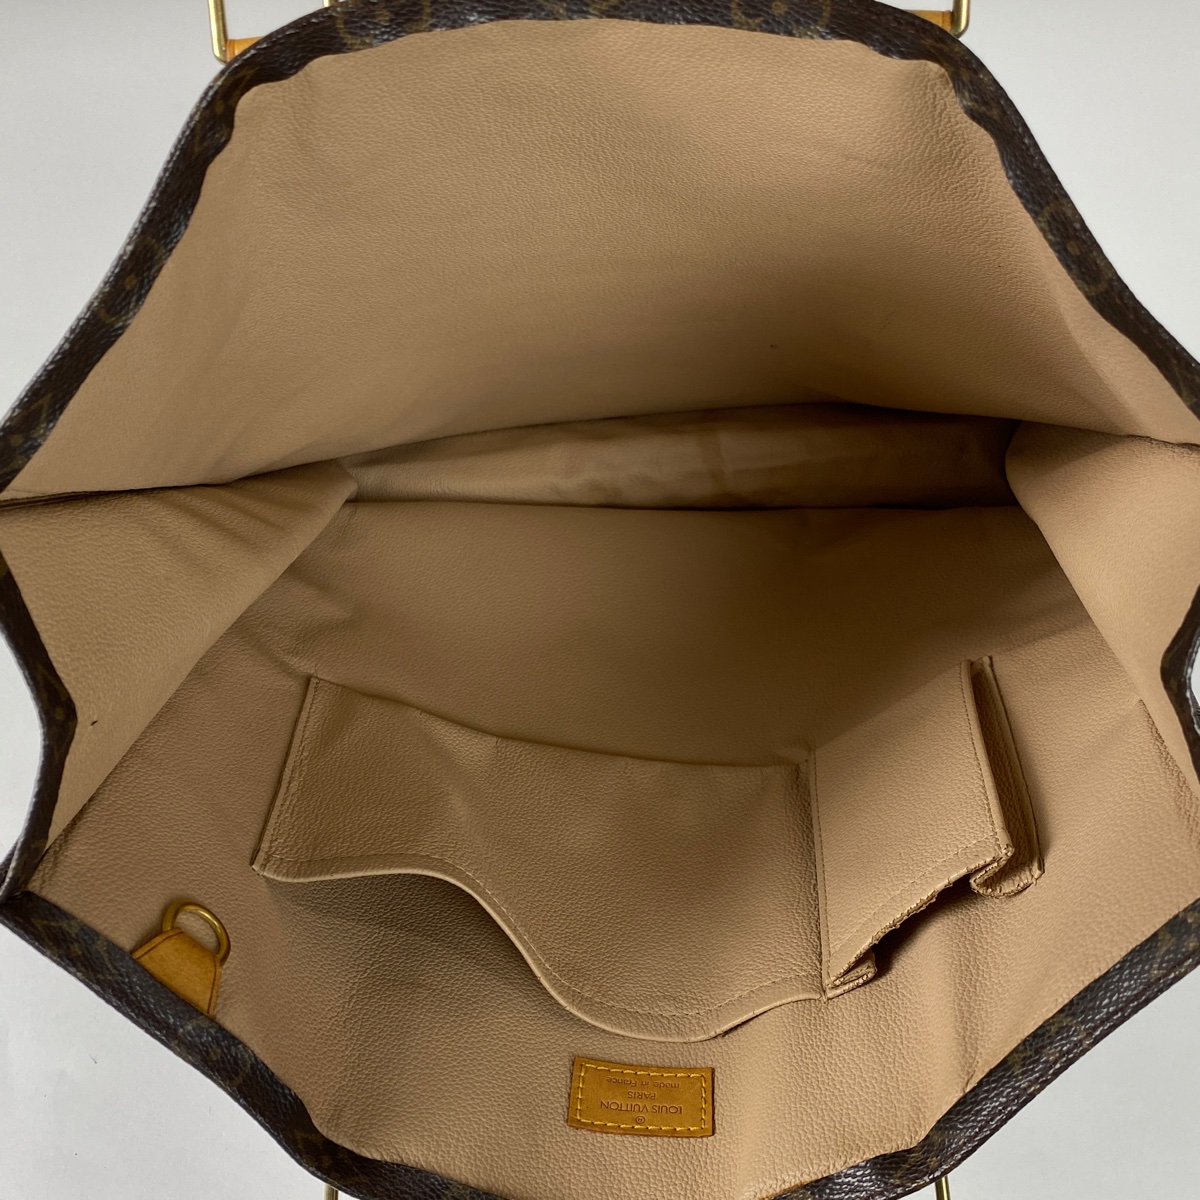 ルイ・ヴィトン Louis Vuitton サックプラ 通勤鞄 通学鞄 ハンドバッグ